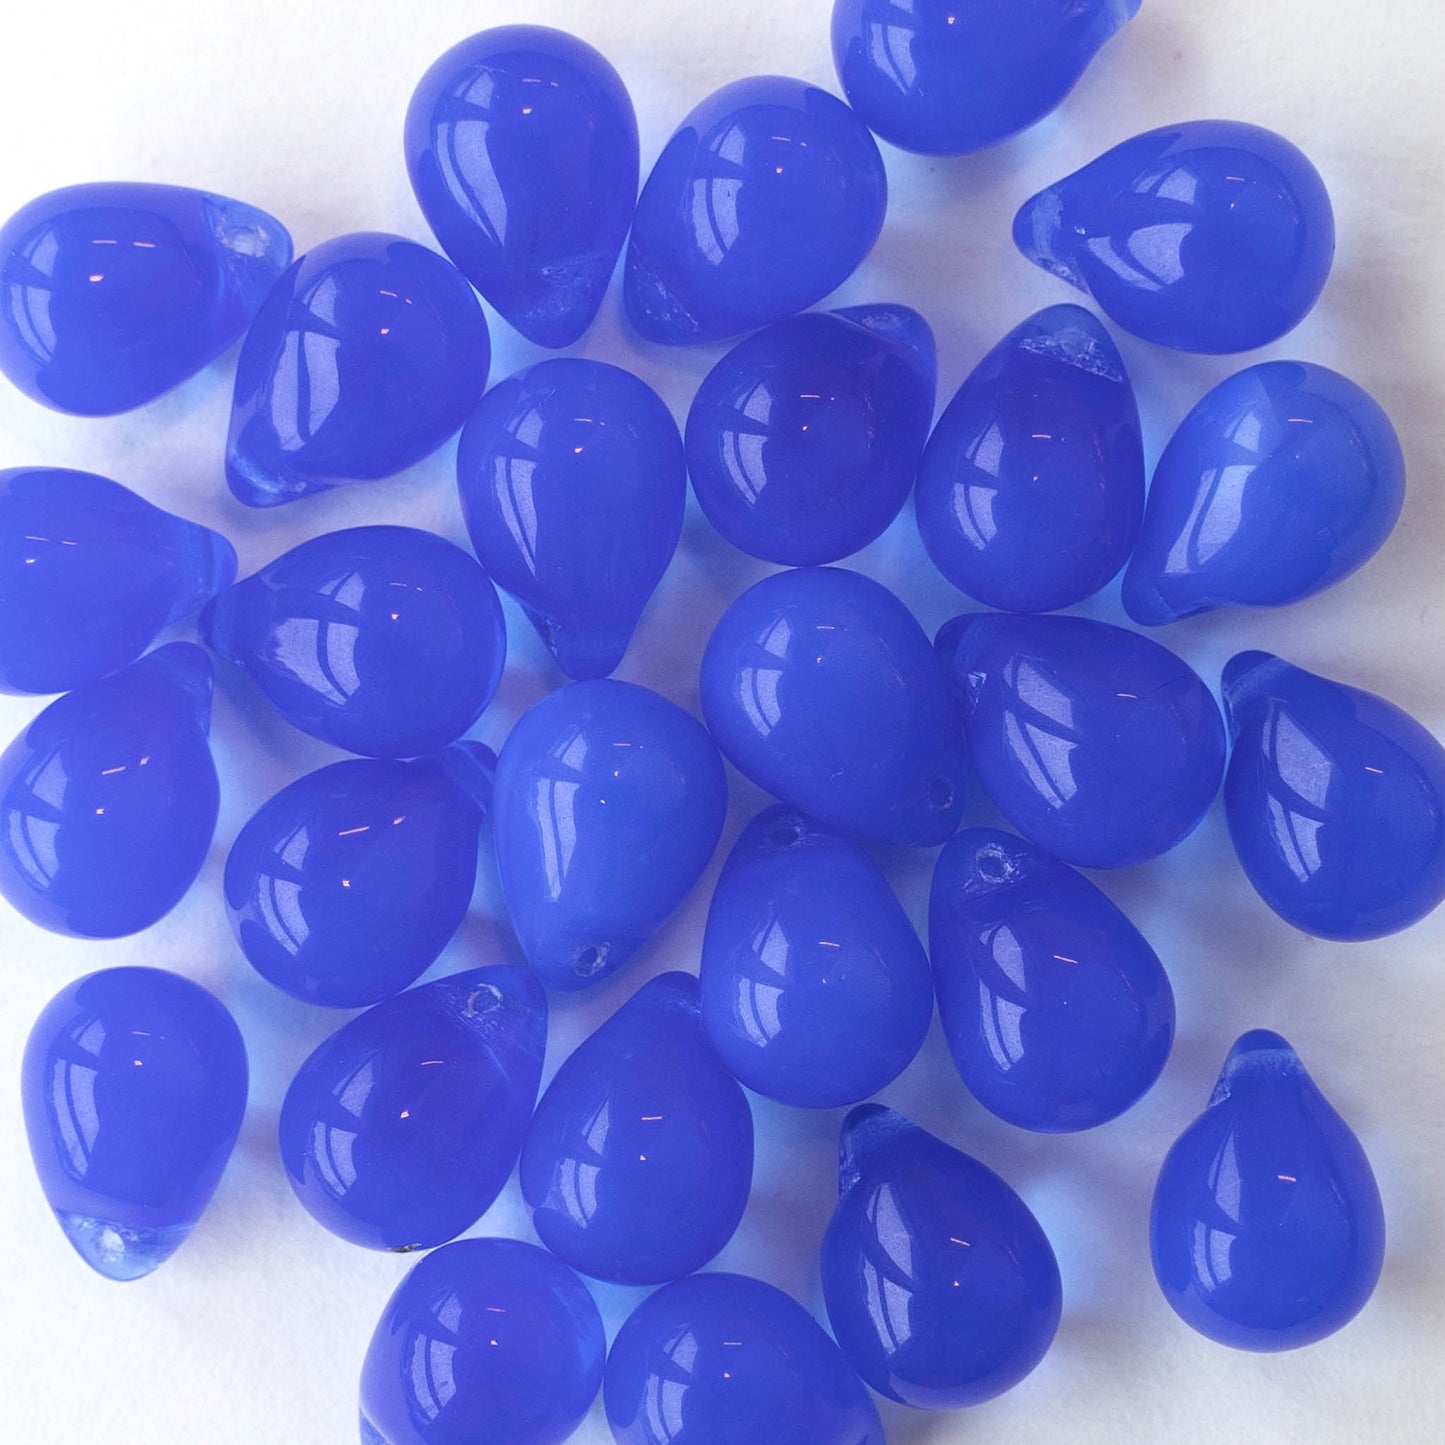 10x14mm Glass Teardrop Beads - Sapphire Blue Opaline - 12 beads